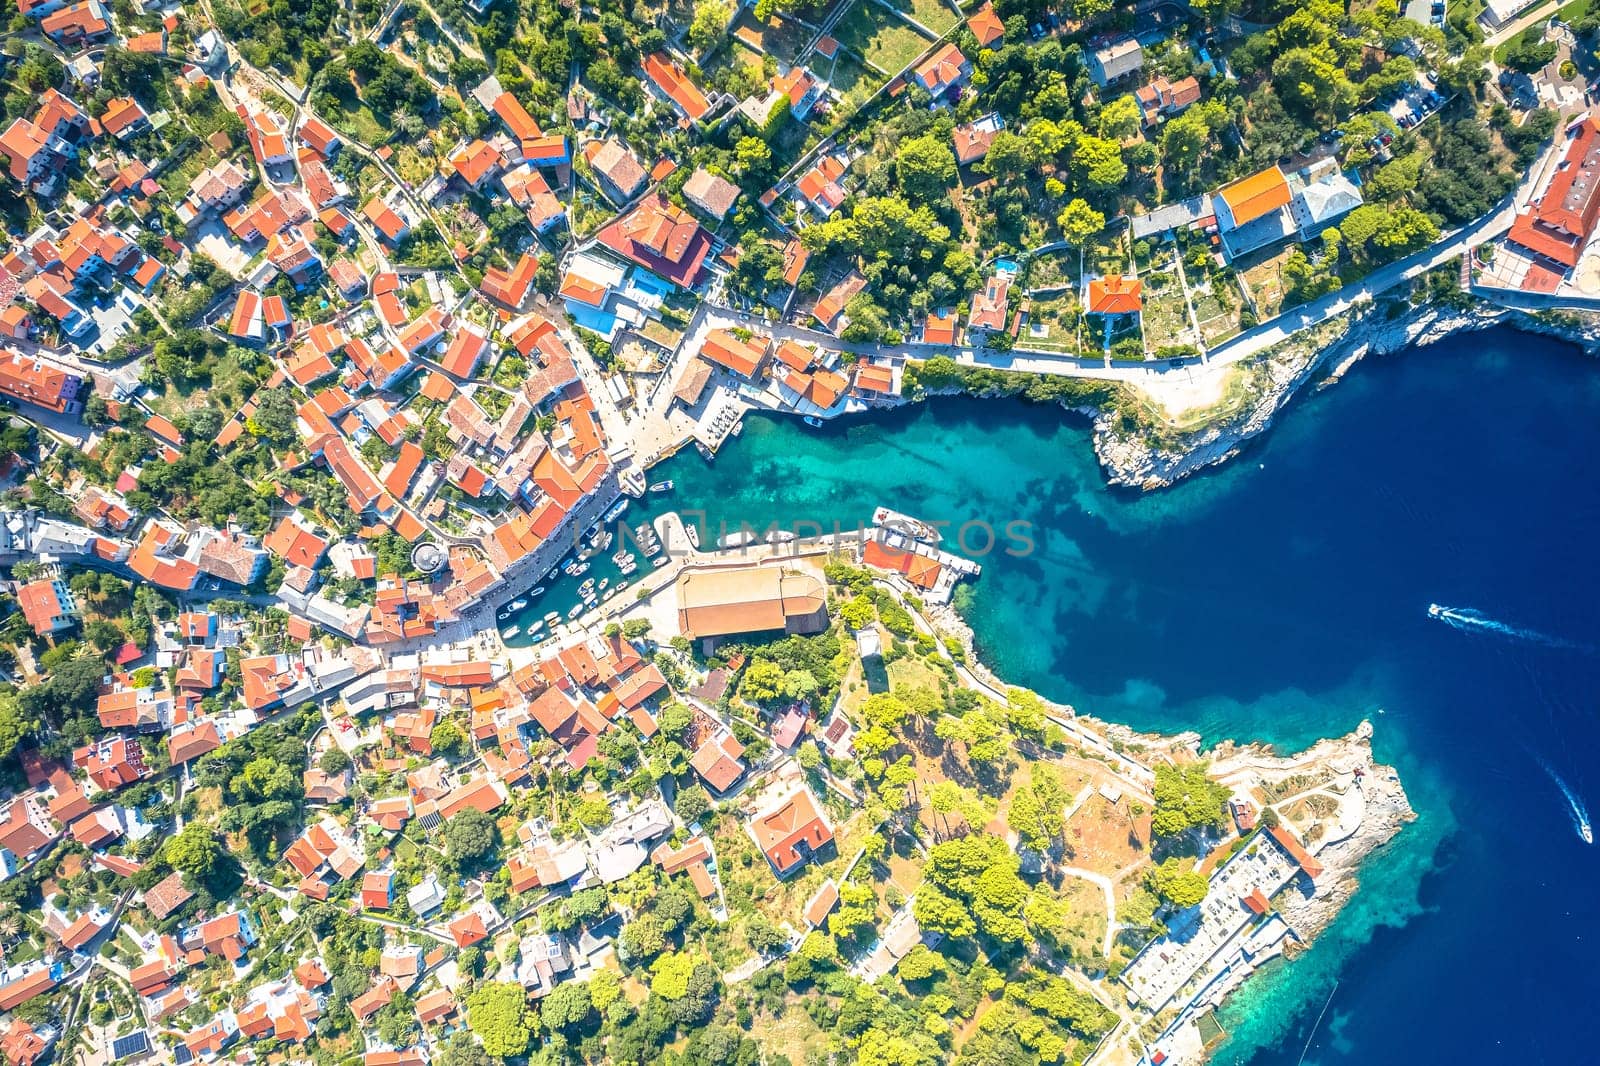 Veli losinj bay and architecture aerial view, Island of Losinj, archipelago of Croatia